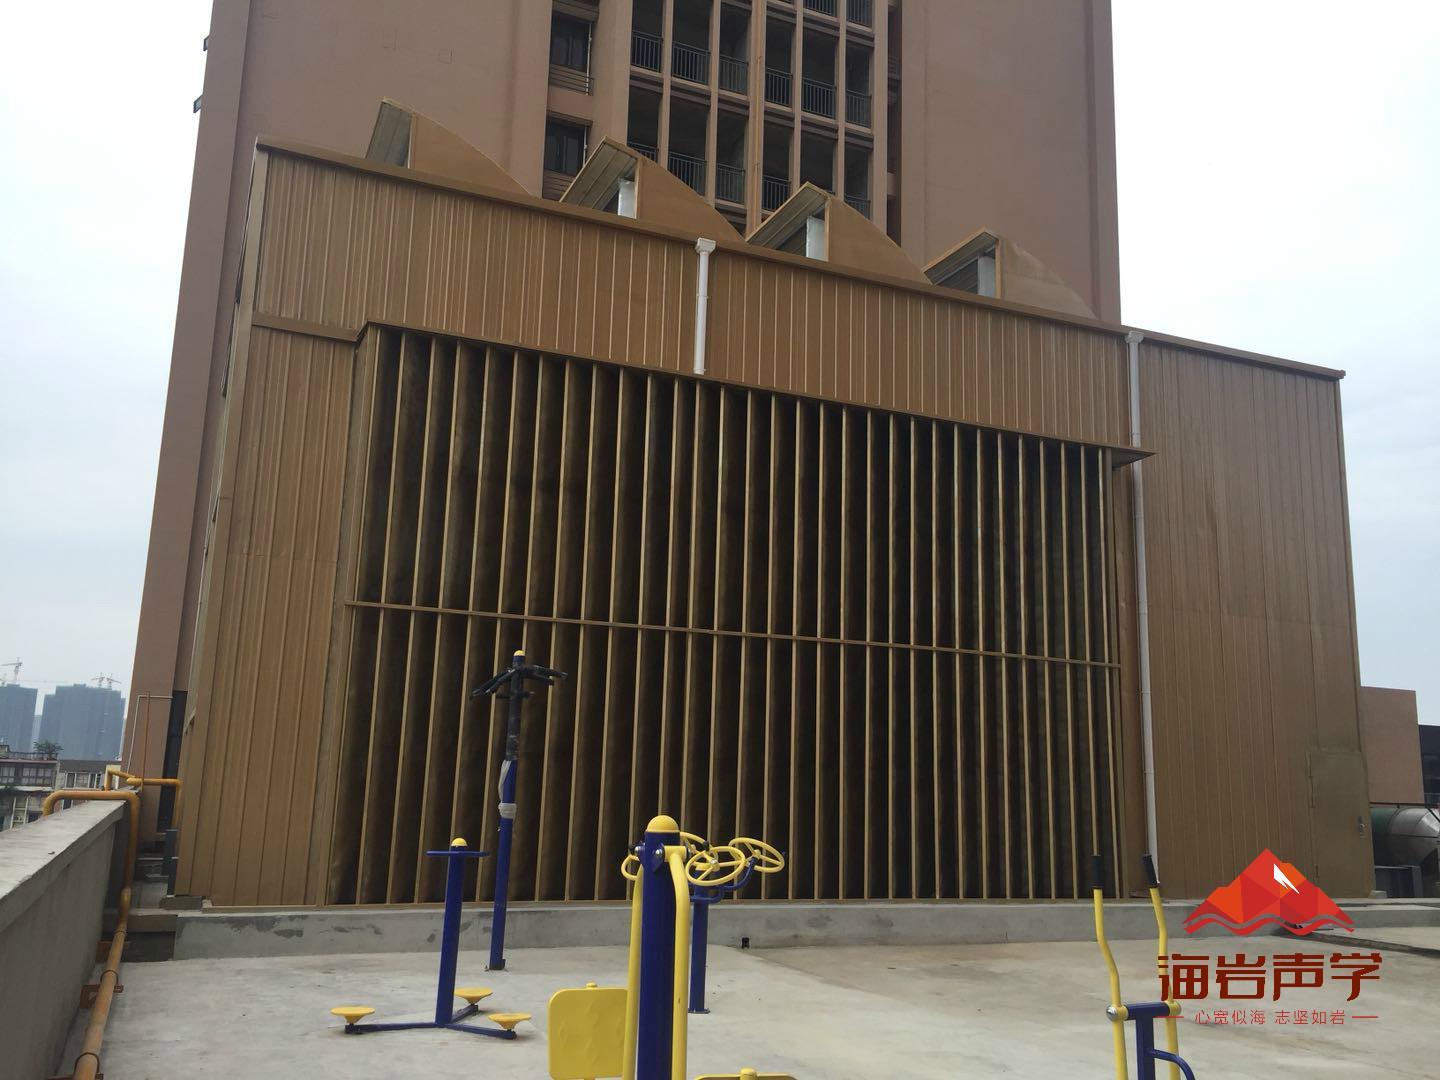 达州冷却塔降噪施工 四川海岩声学科技有限公司